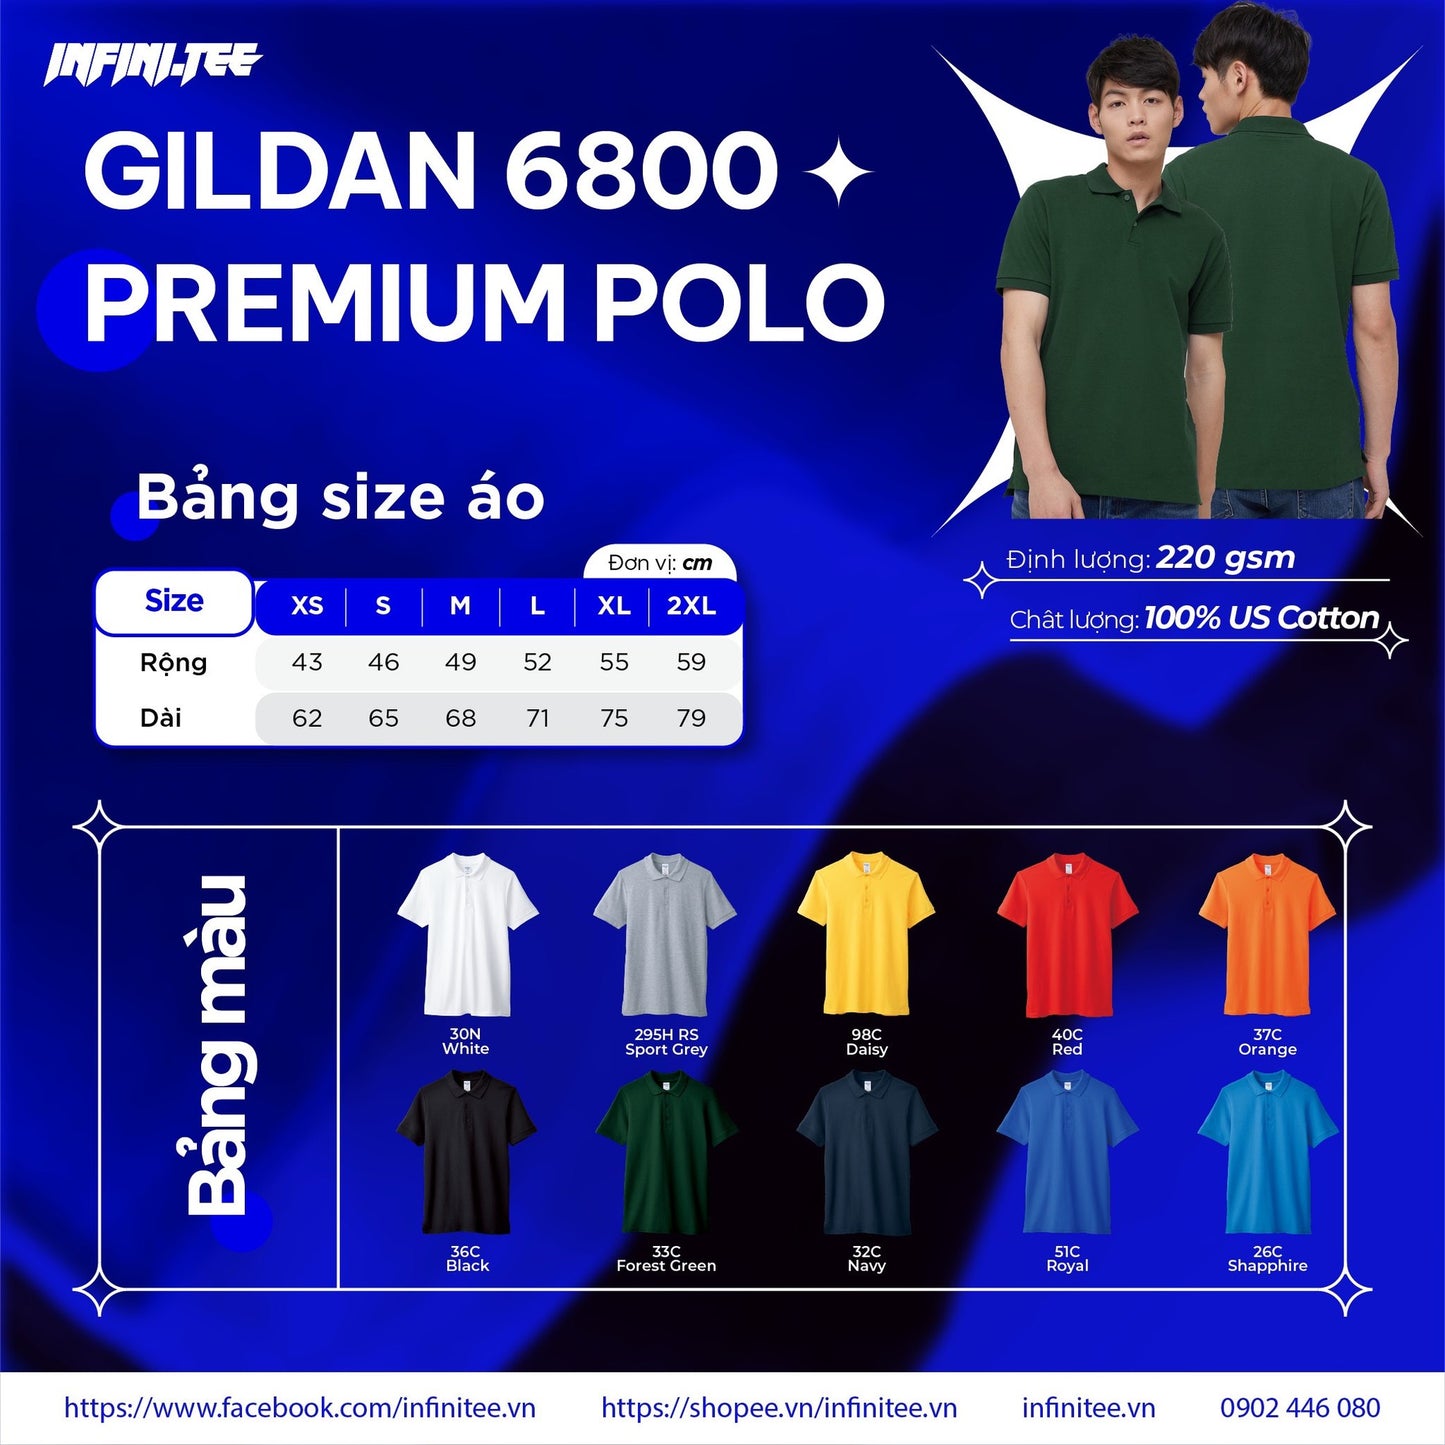 Bộ áo mẫu POLO Premium Gildan 6800